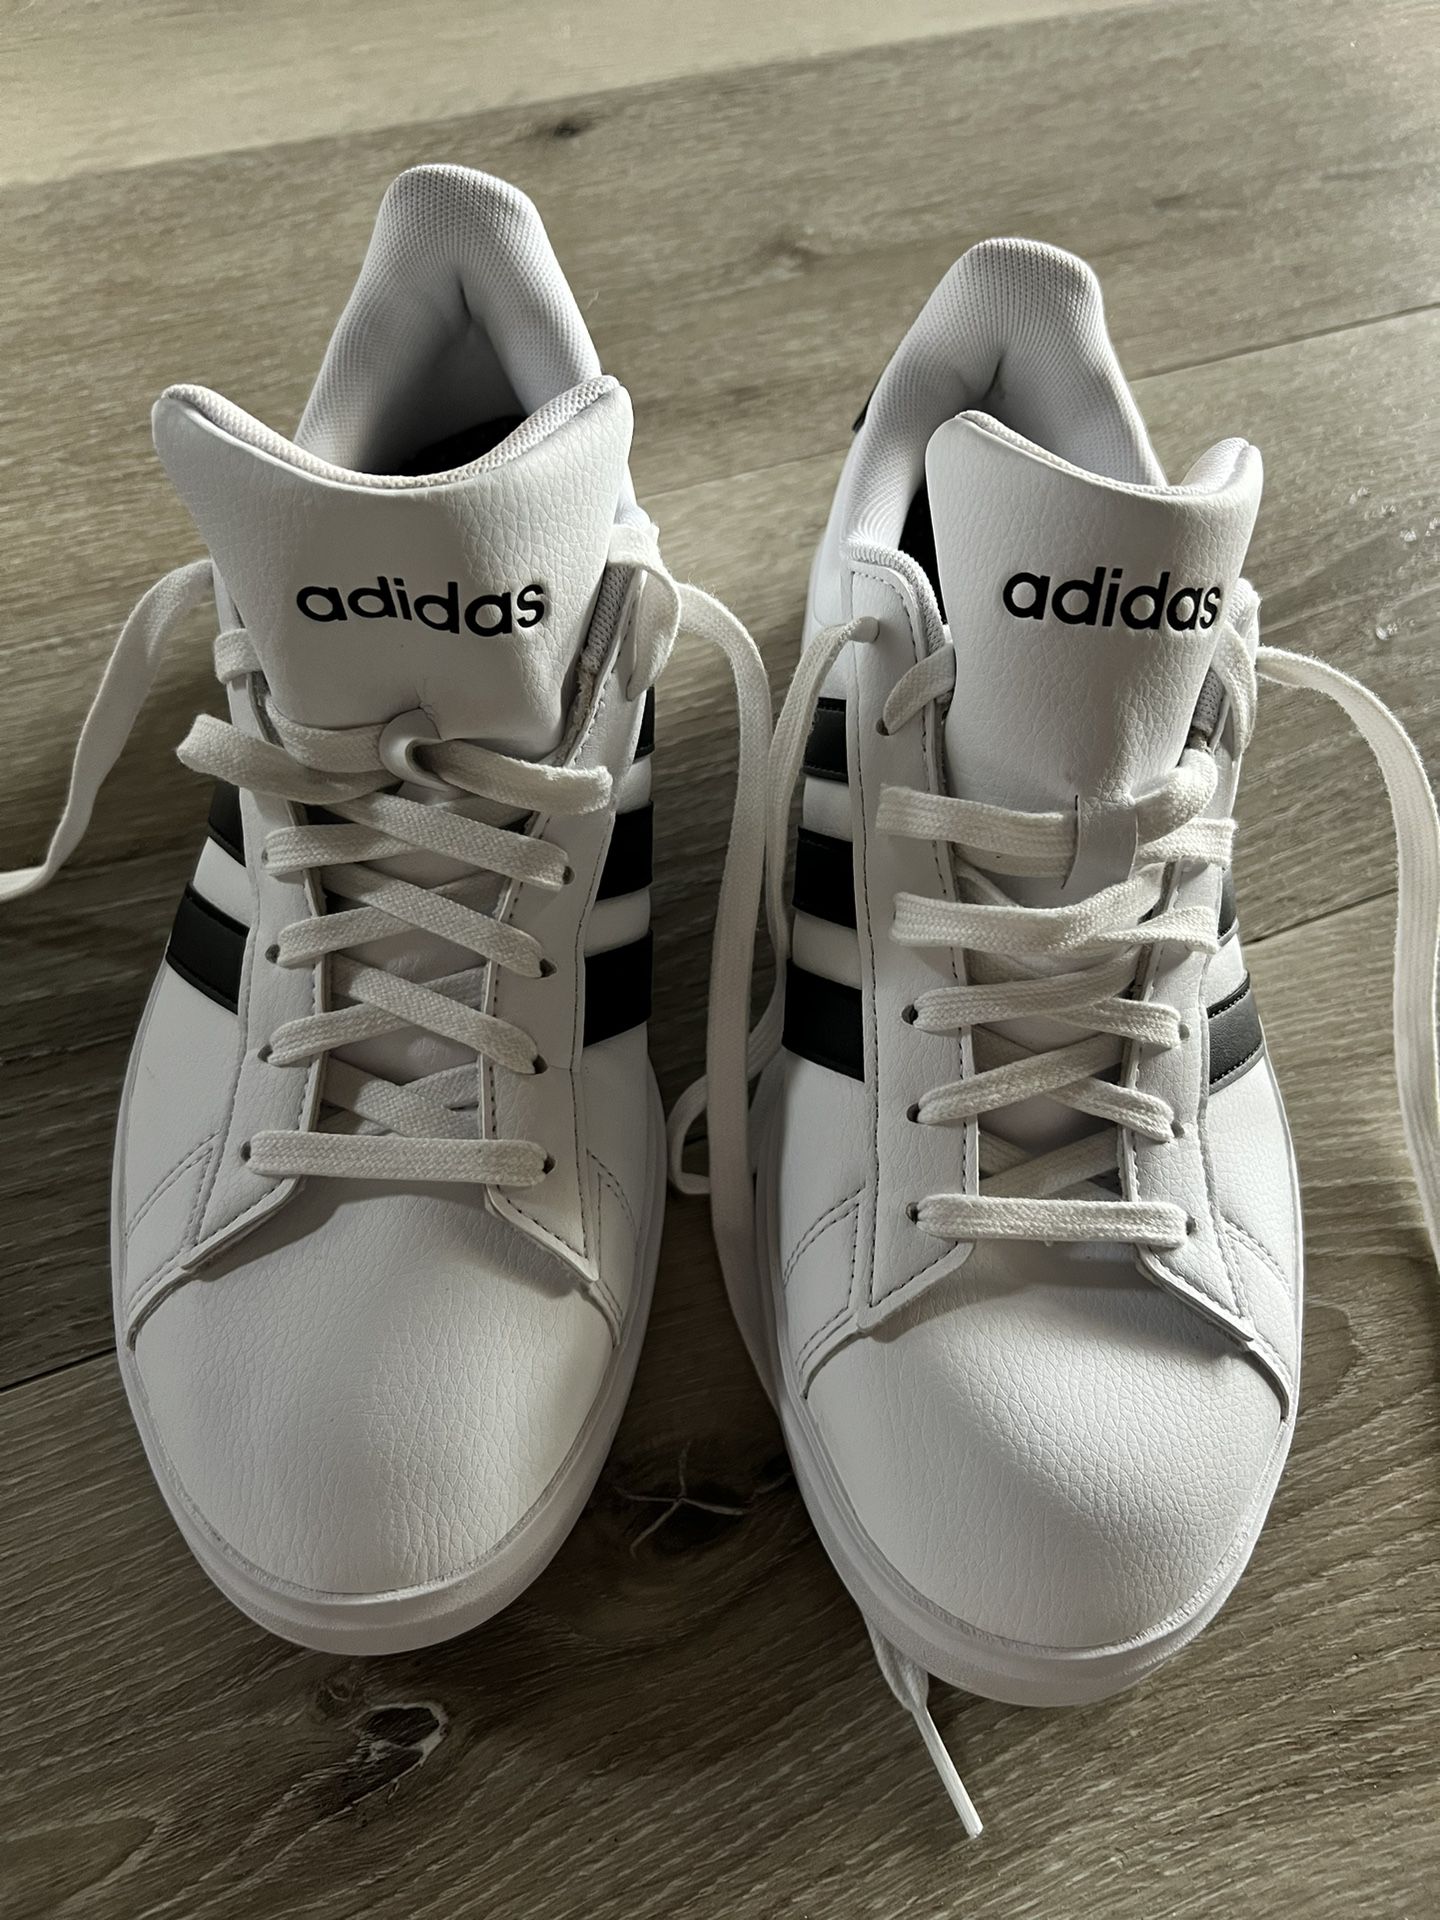 Adidas Women’s Shoe